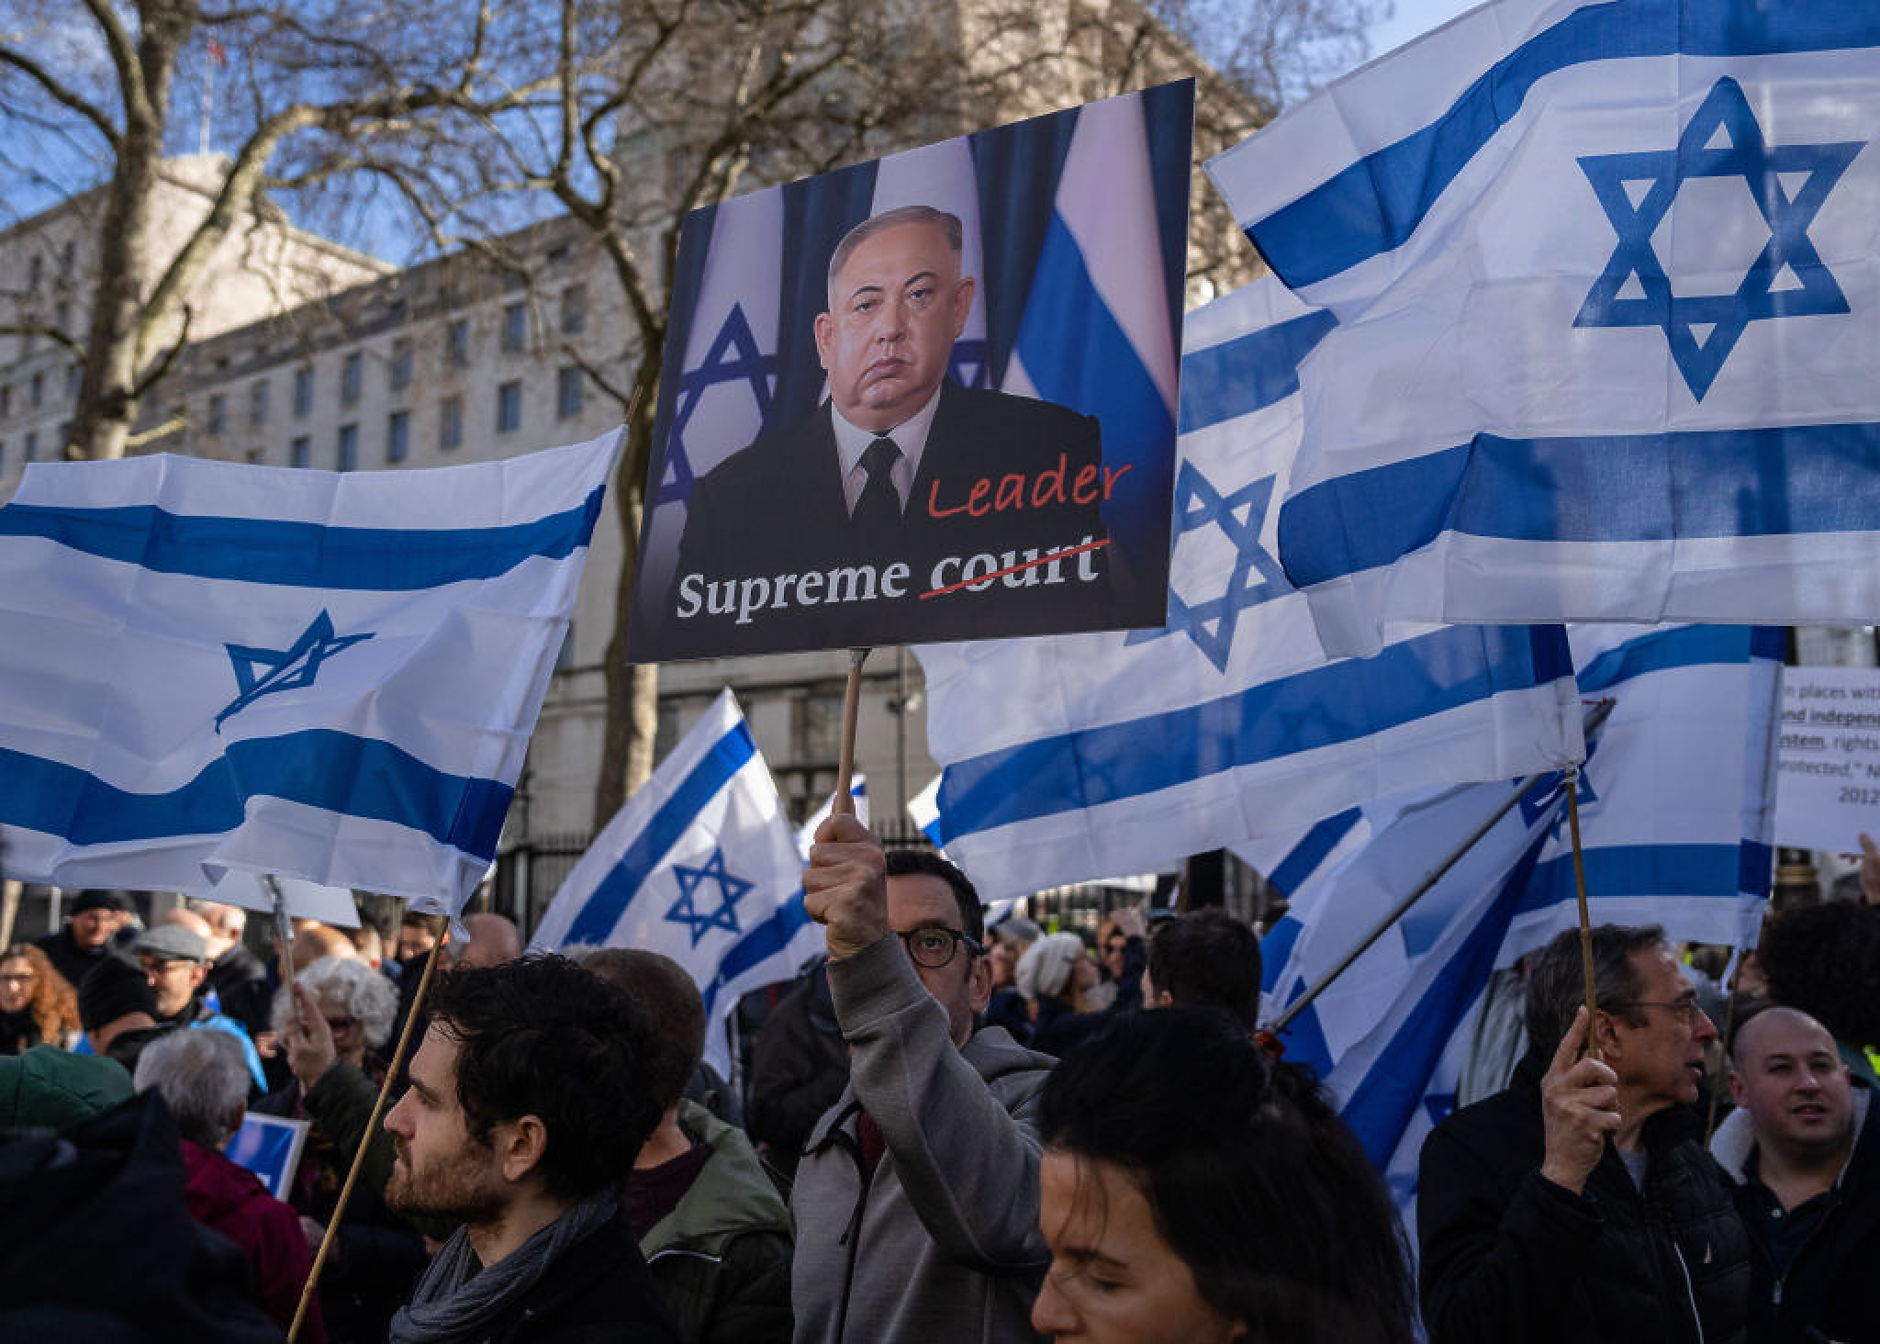 Хаос и протести в Израел заради спорна съдебна реформа